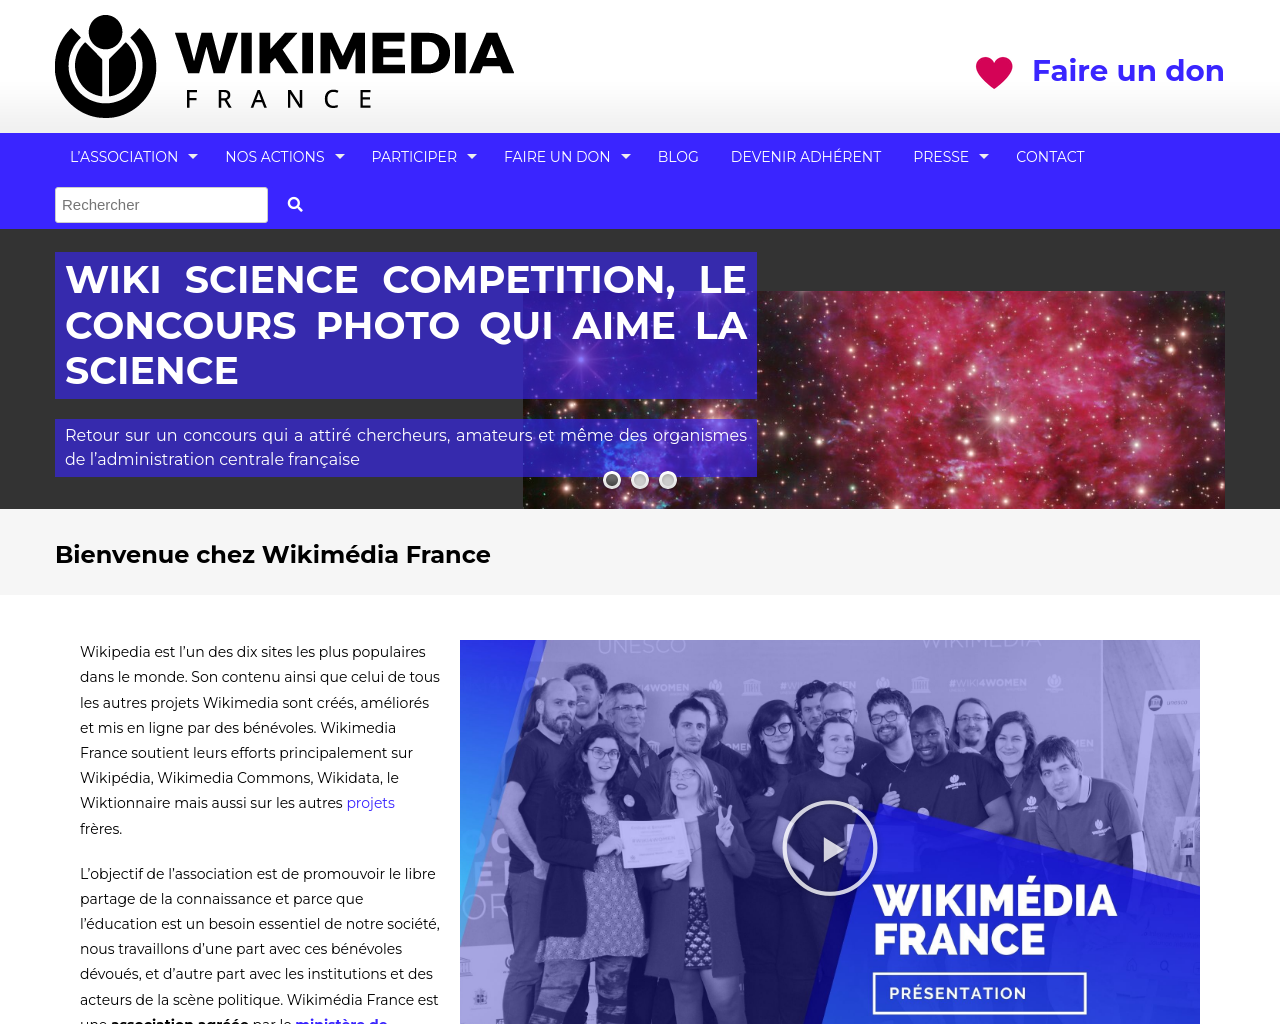 wikimedia.fr